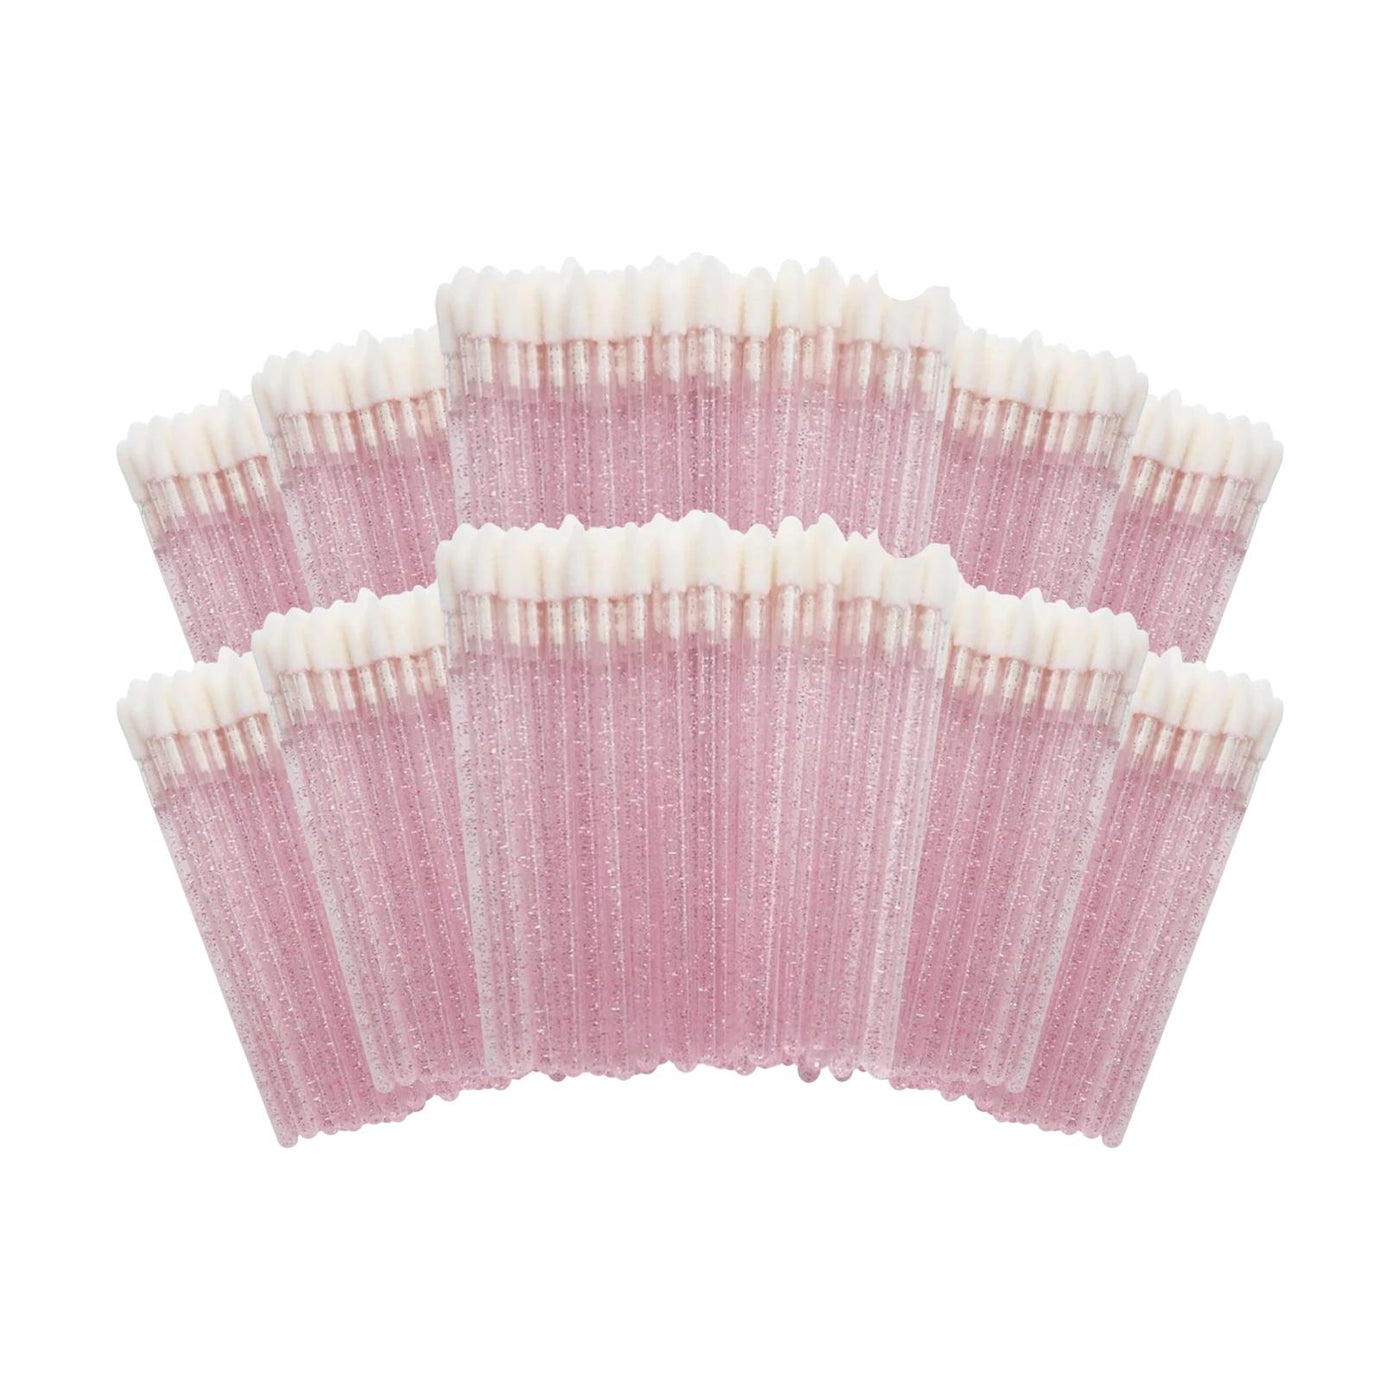 Flocked Applicator Brushes for Eyelash Extension Light Pink Glitter - 10 Pack